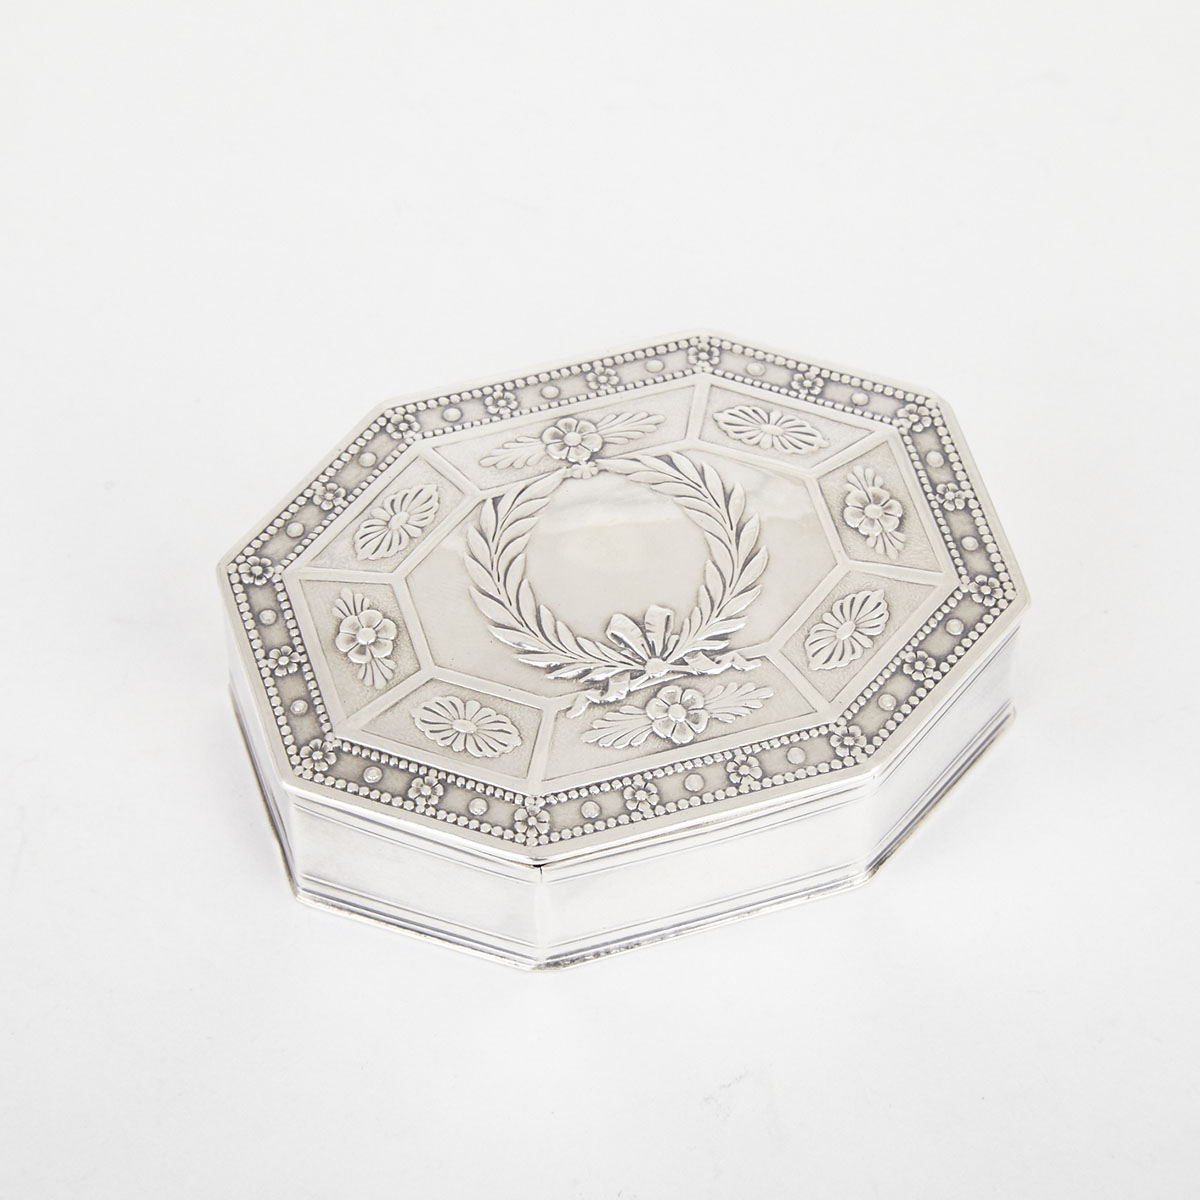 French Silver Octagonal Snuff Box, Henin & Cie, Paris, c.1900